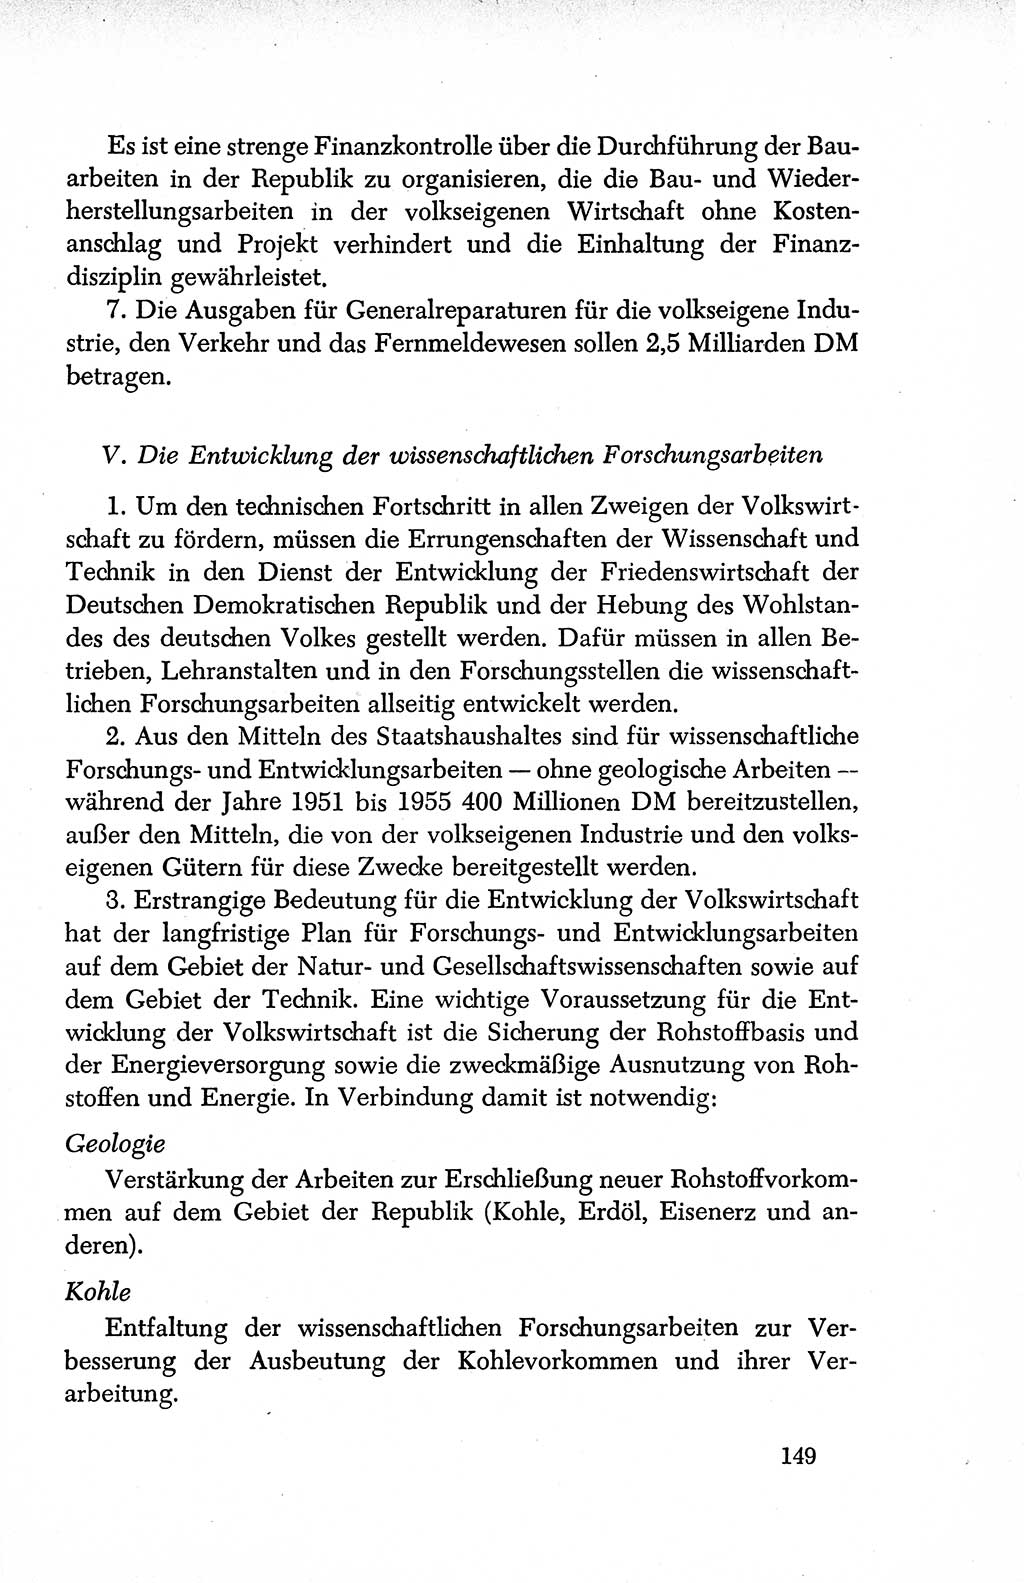 Dokumente der Sozialistischen Einheitspartei Deutschlands (SED) [Deutsche Demokratische Republik (DDR)] 1950-1952, Seite 149 (Dok. SED DDR 1950-1952, S. 149)